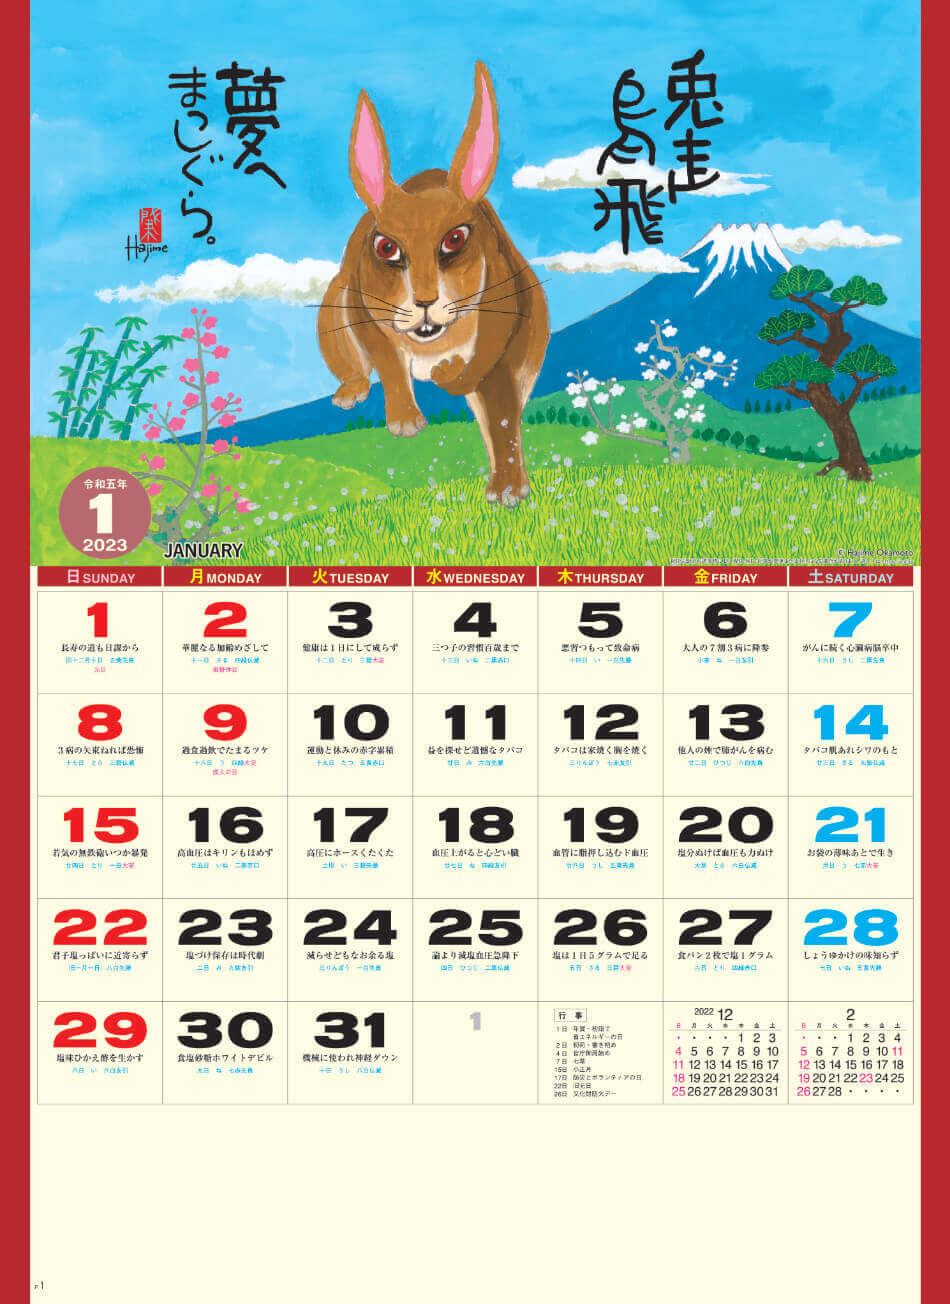  卯(夢) 岡本肇 2023年カレンダーの画像